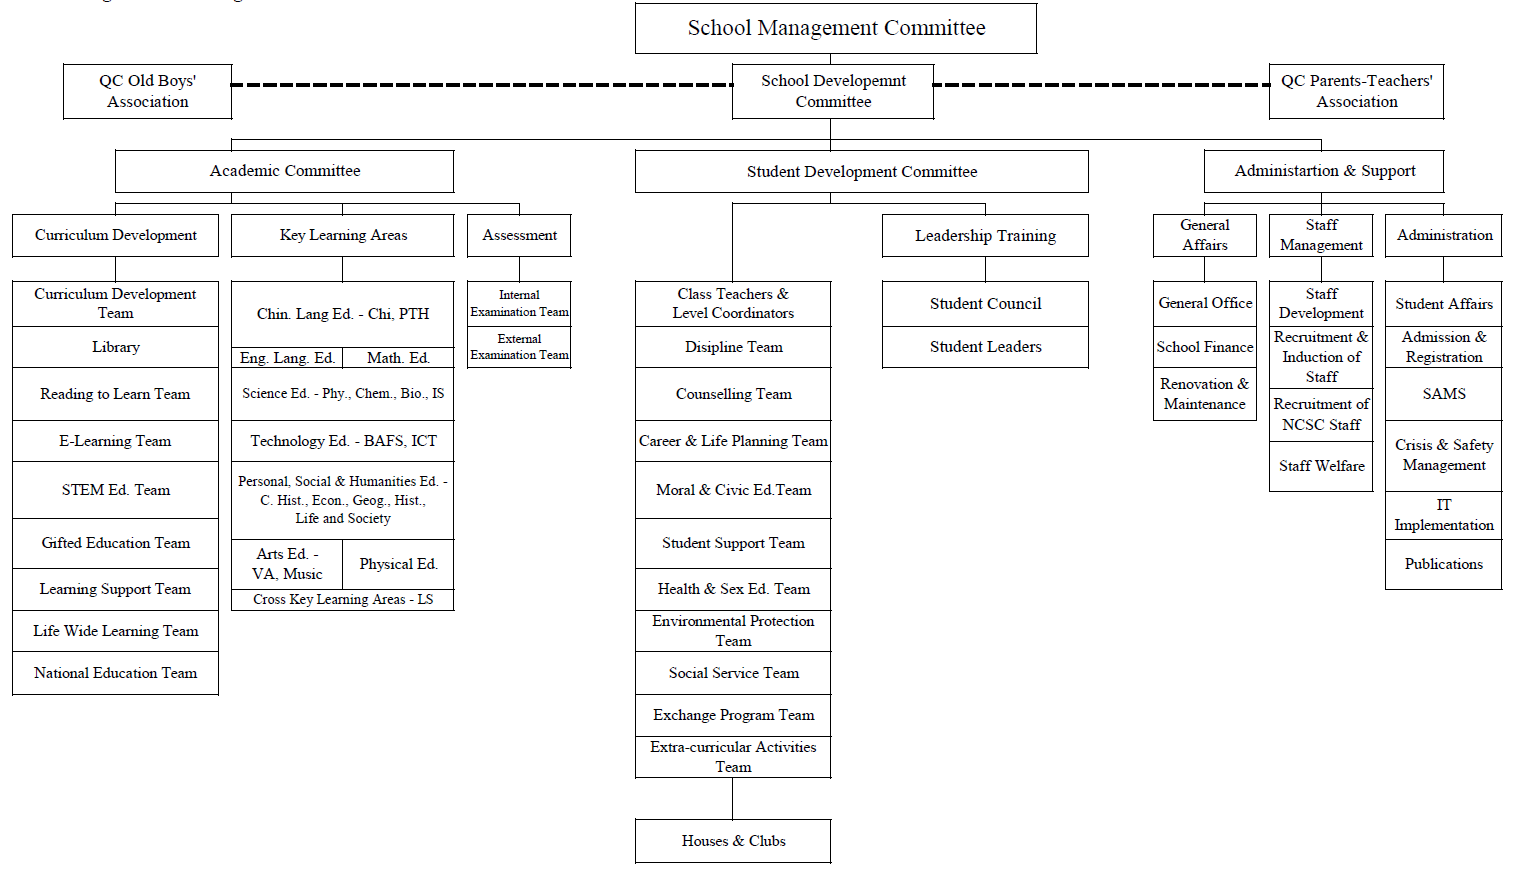 Organization Chart 21-22